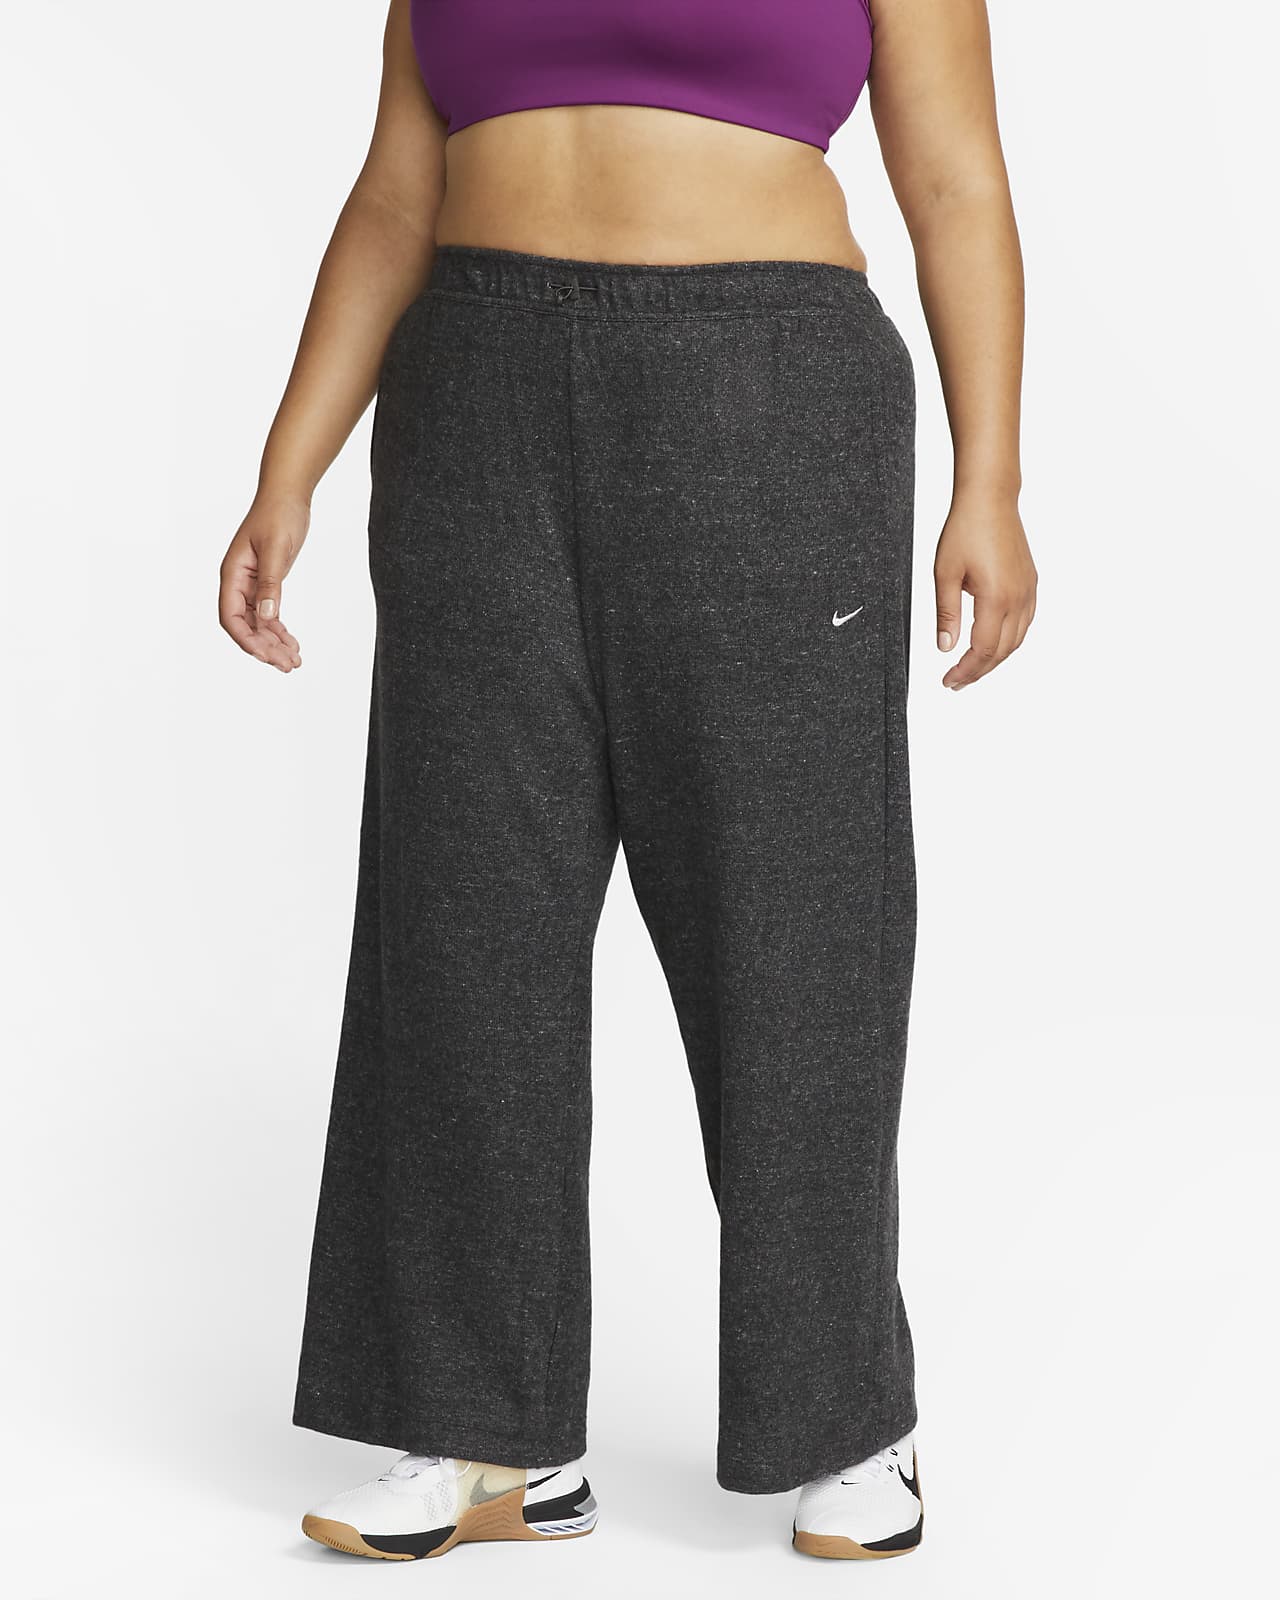 Γυναικείο παντελόνι προπόνησης Nike Therma-FIT (μεγάλα μεγέθη)